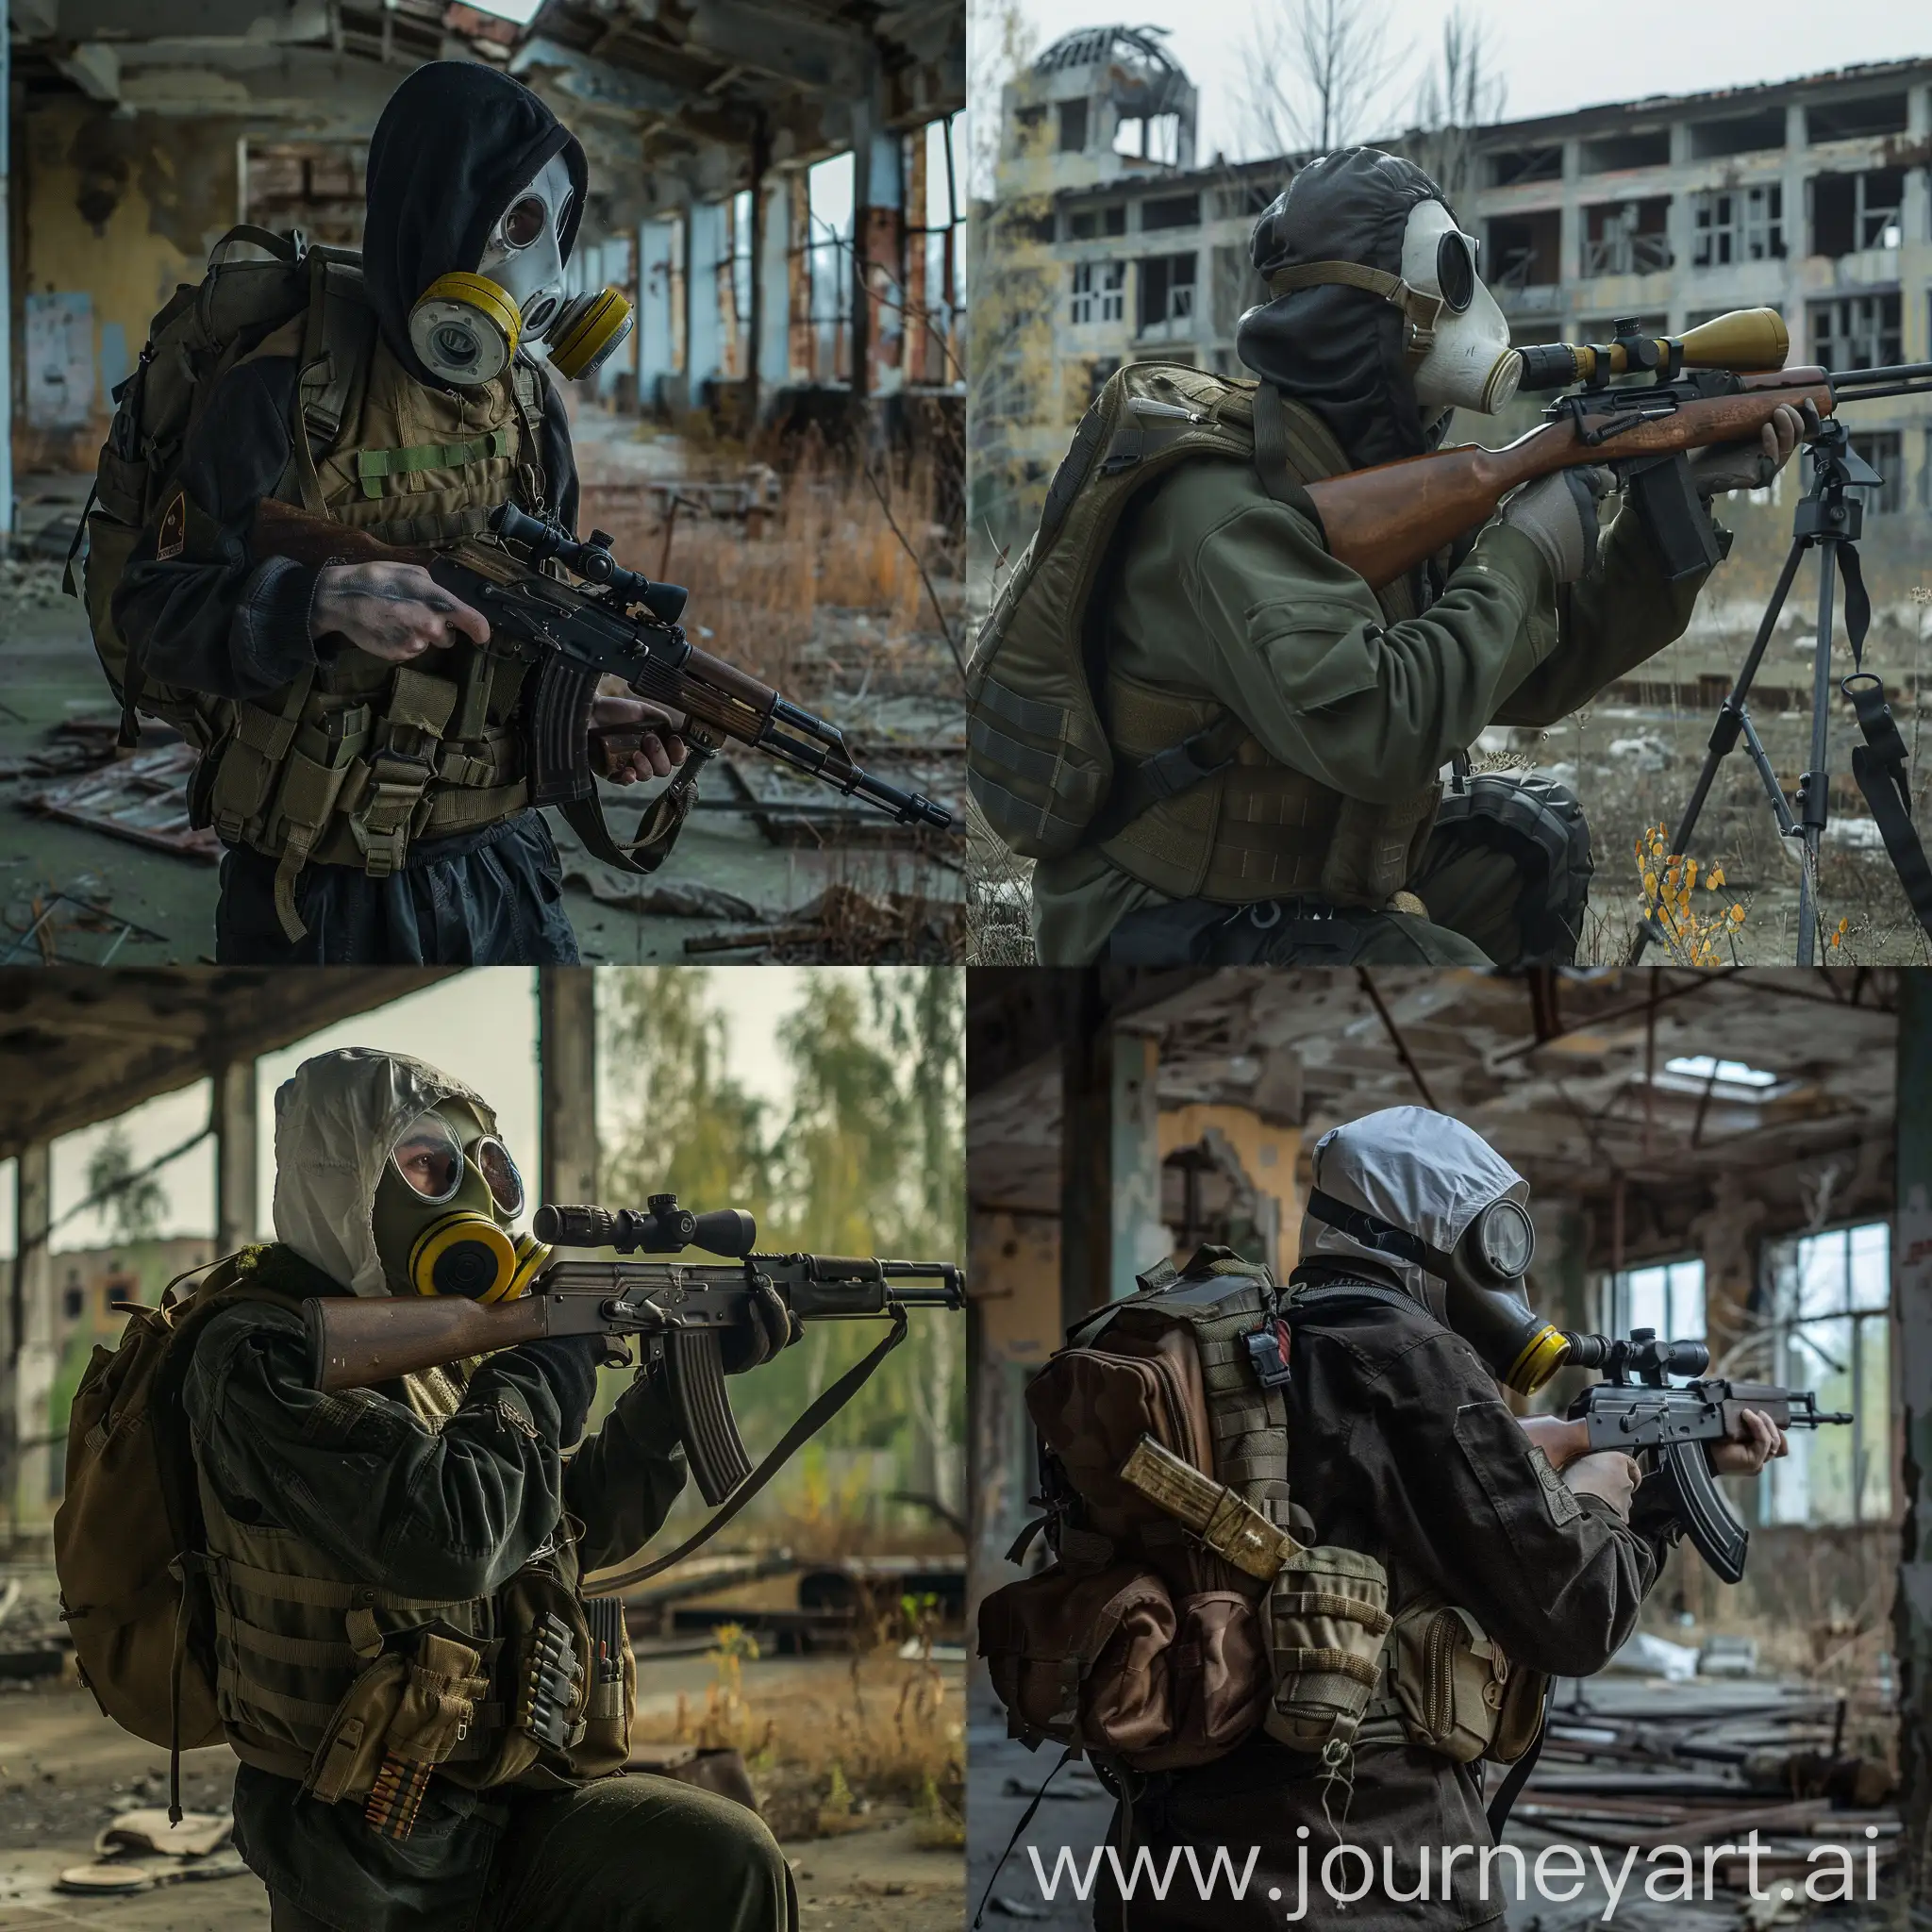 Stalker, Abandoned Pripyat, loner stalker, small backpack on the back, sniper rifle in the hands, gasmask, military vest.